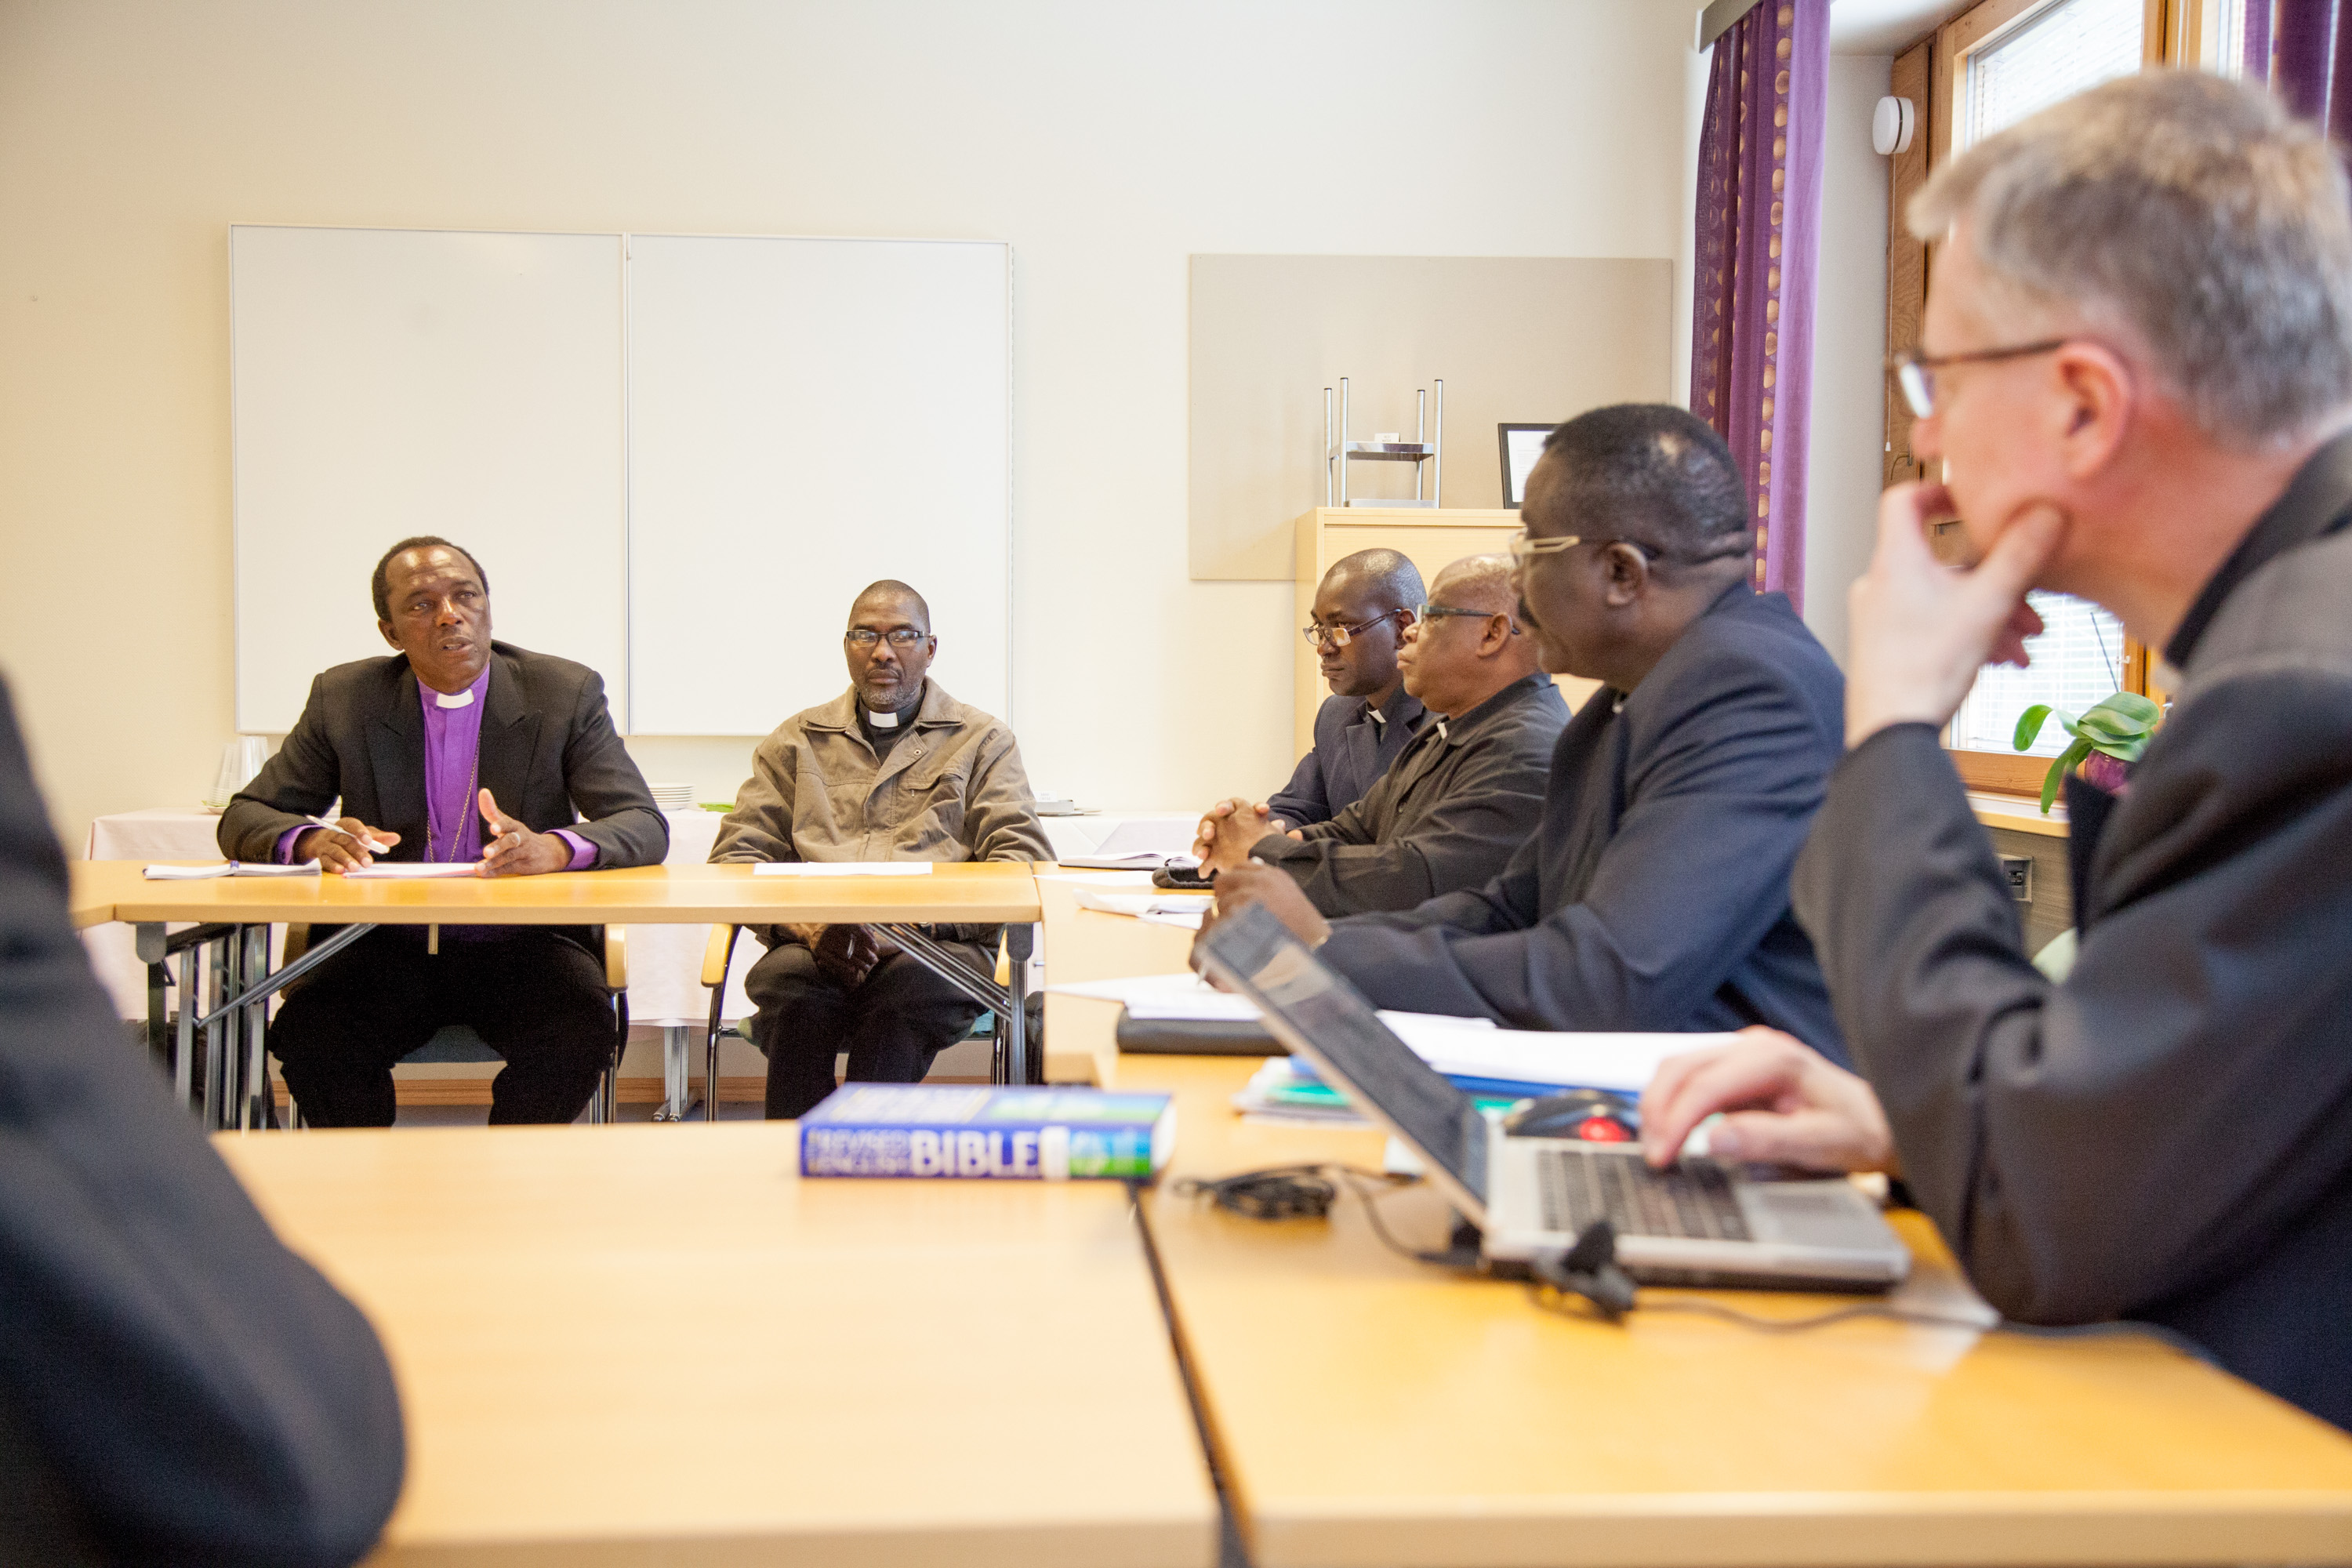 Veikko Munyika (vasemmalla) johtaa Namibian evankelis-luterilaisen kirkon kahdeksan hengen delegaatiota, joka osallistuu Round Table -neuvotteluun Helsingissä.